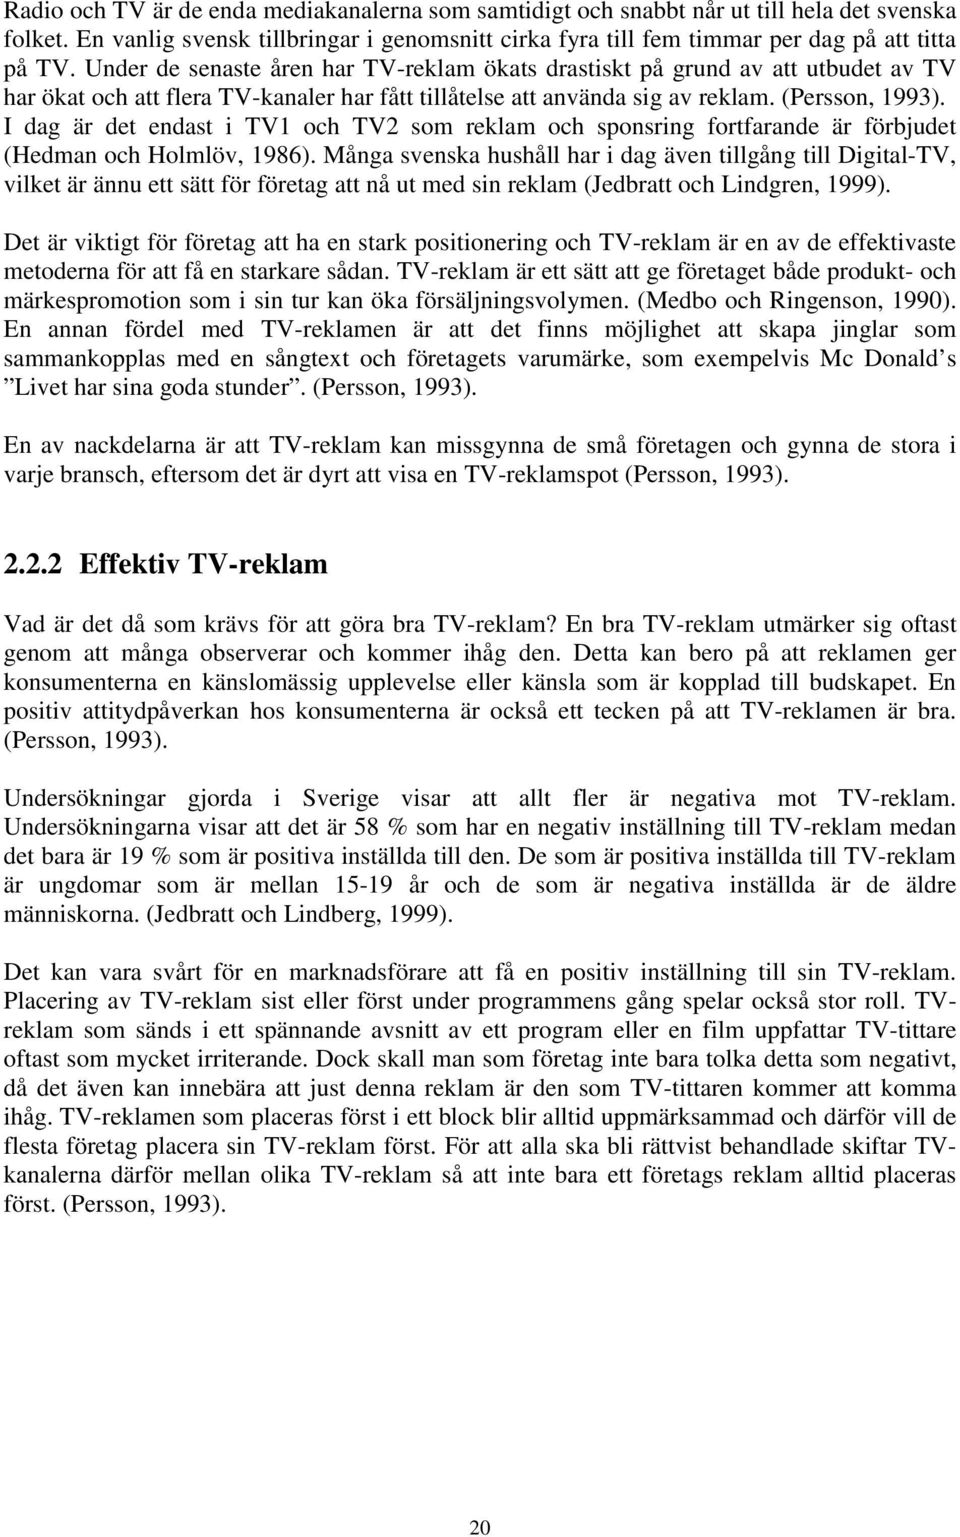 I dag är det endast i TV1 och TV2 som reklam och sponsring fortfarande är förbjudet (Hedman och Holmlöv, 1986).